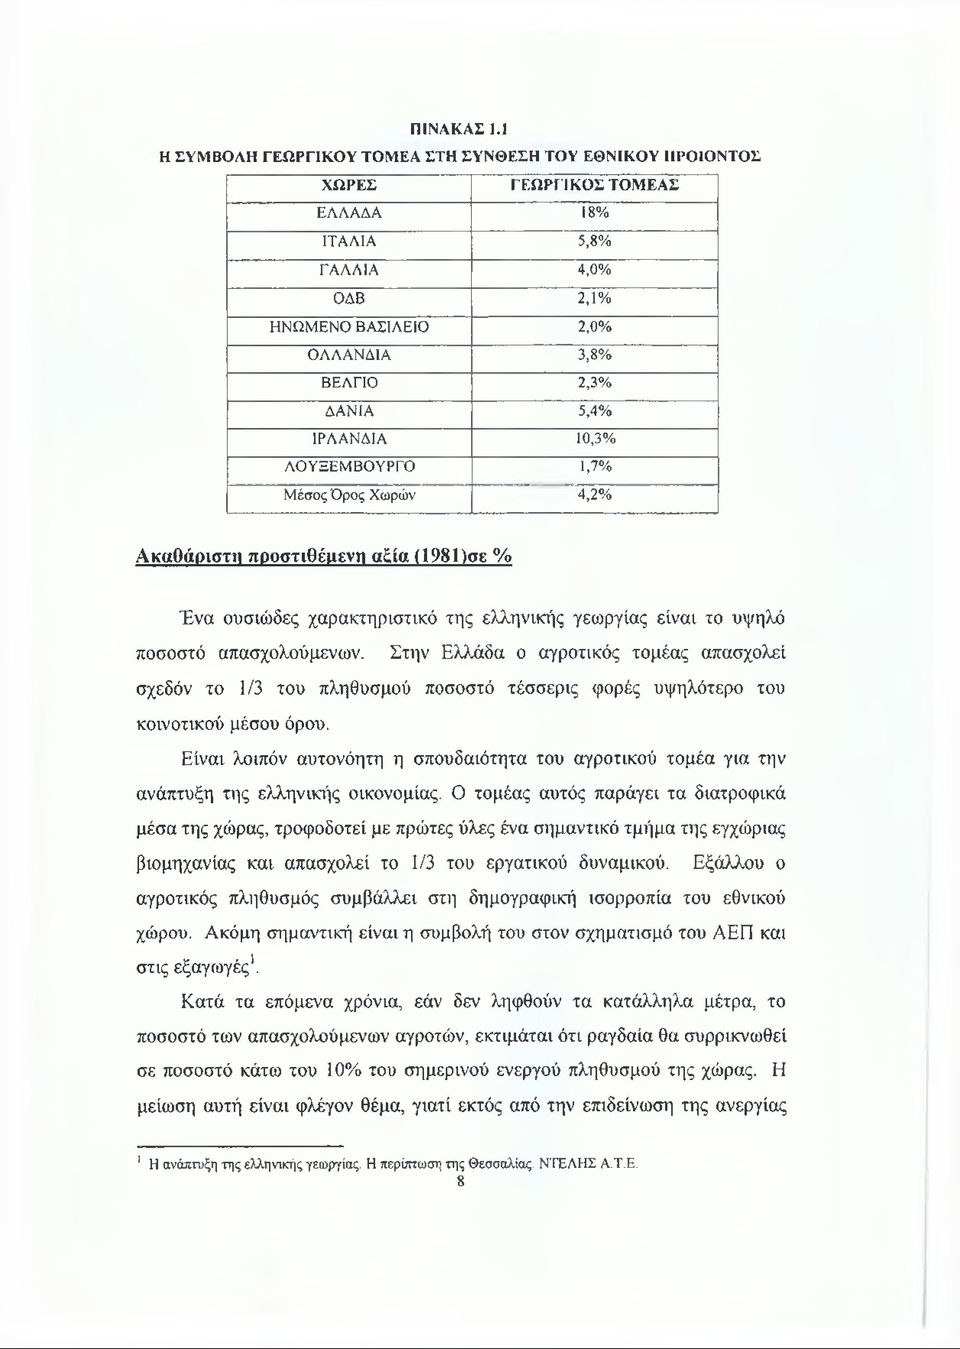 10,3% ΛΟΥΞΕΜΒΟΥΡΓΟ 1,7% Μέσος Όρος Χωρών 4,2% Ακαθάριστη προστιθέμενη αξία (1981)σε % Ένα ουσιώδες χαρακτηριστικό της ελληνικής γεωργίας είναι το υψηλό ποσοστό απασχολούμενων.